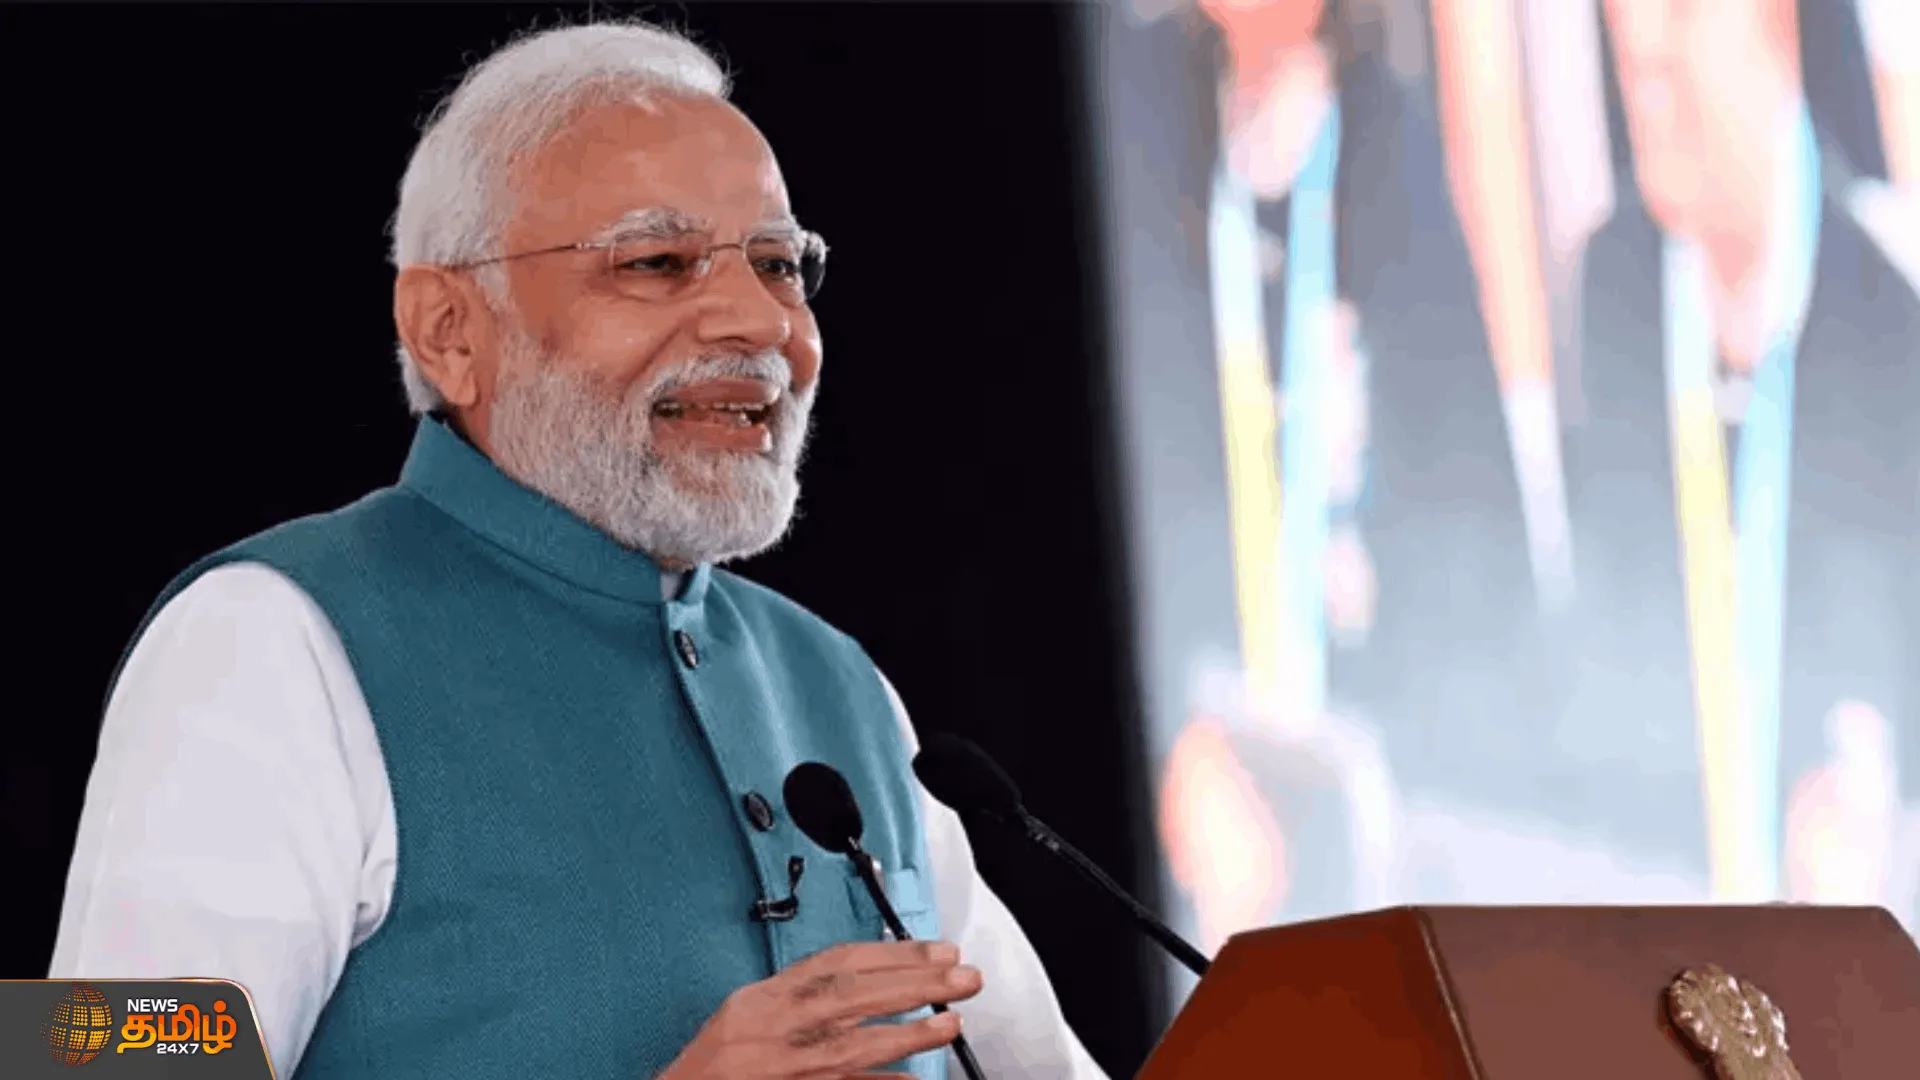 இன்று மத்தியபிரதேசம், ராஜஸ்தான் செல்லும் பிரதமர் மோடி   நிறைவடைந்த திட்டங்களை தொடங்கி வைக்கிறார் பிரதமர்  |PM Modi will visit Madhya Pradesh